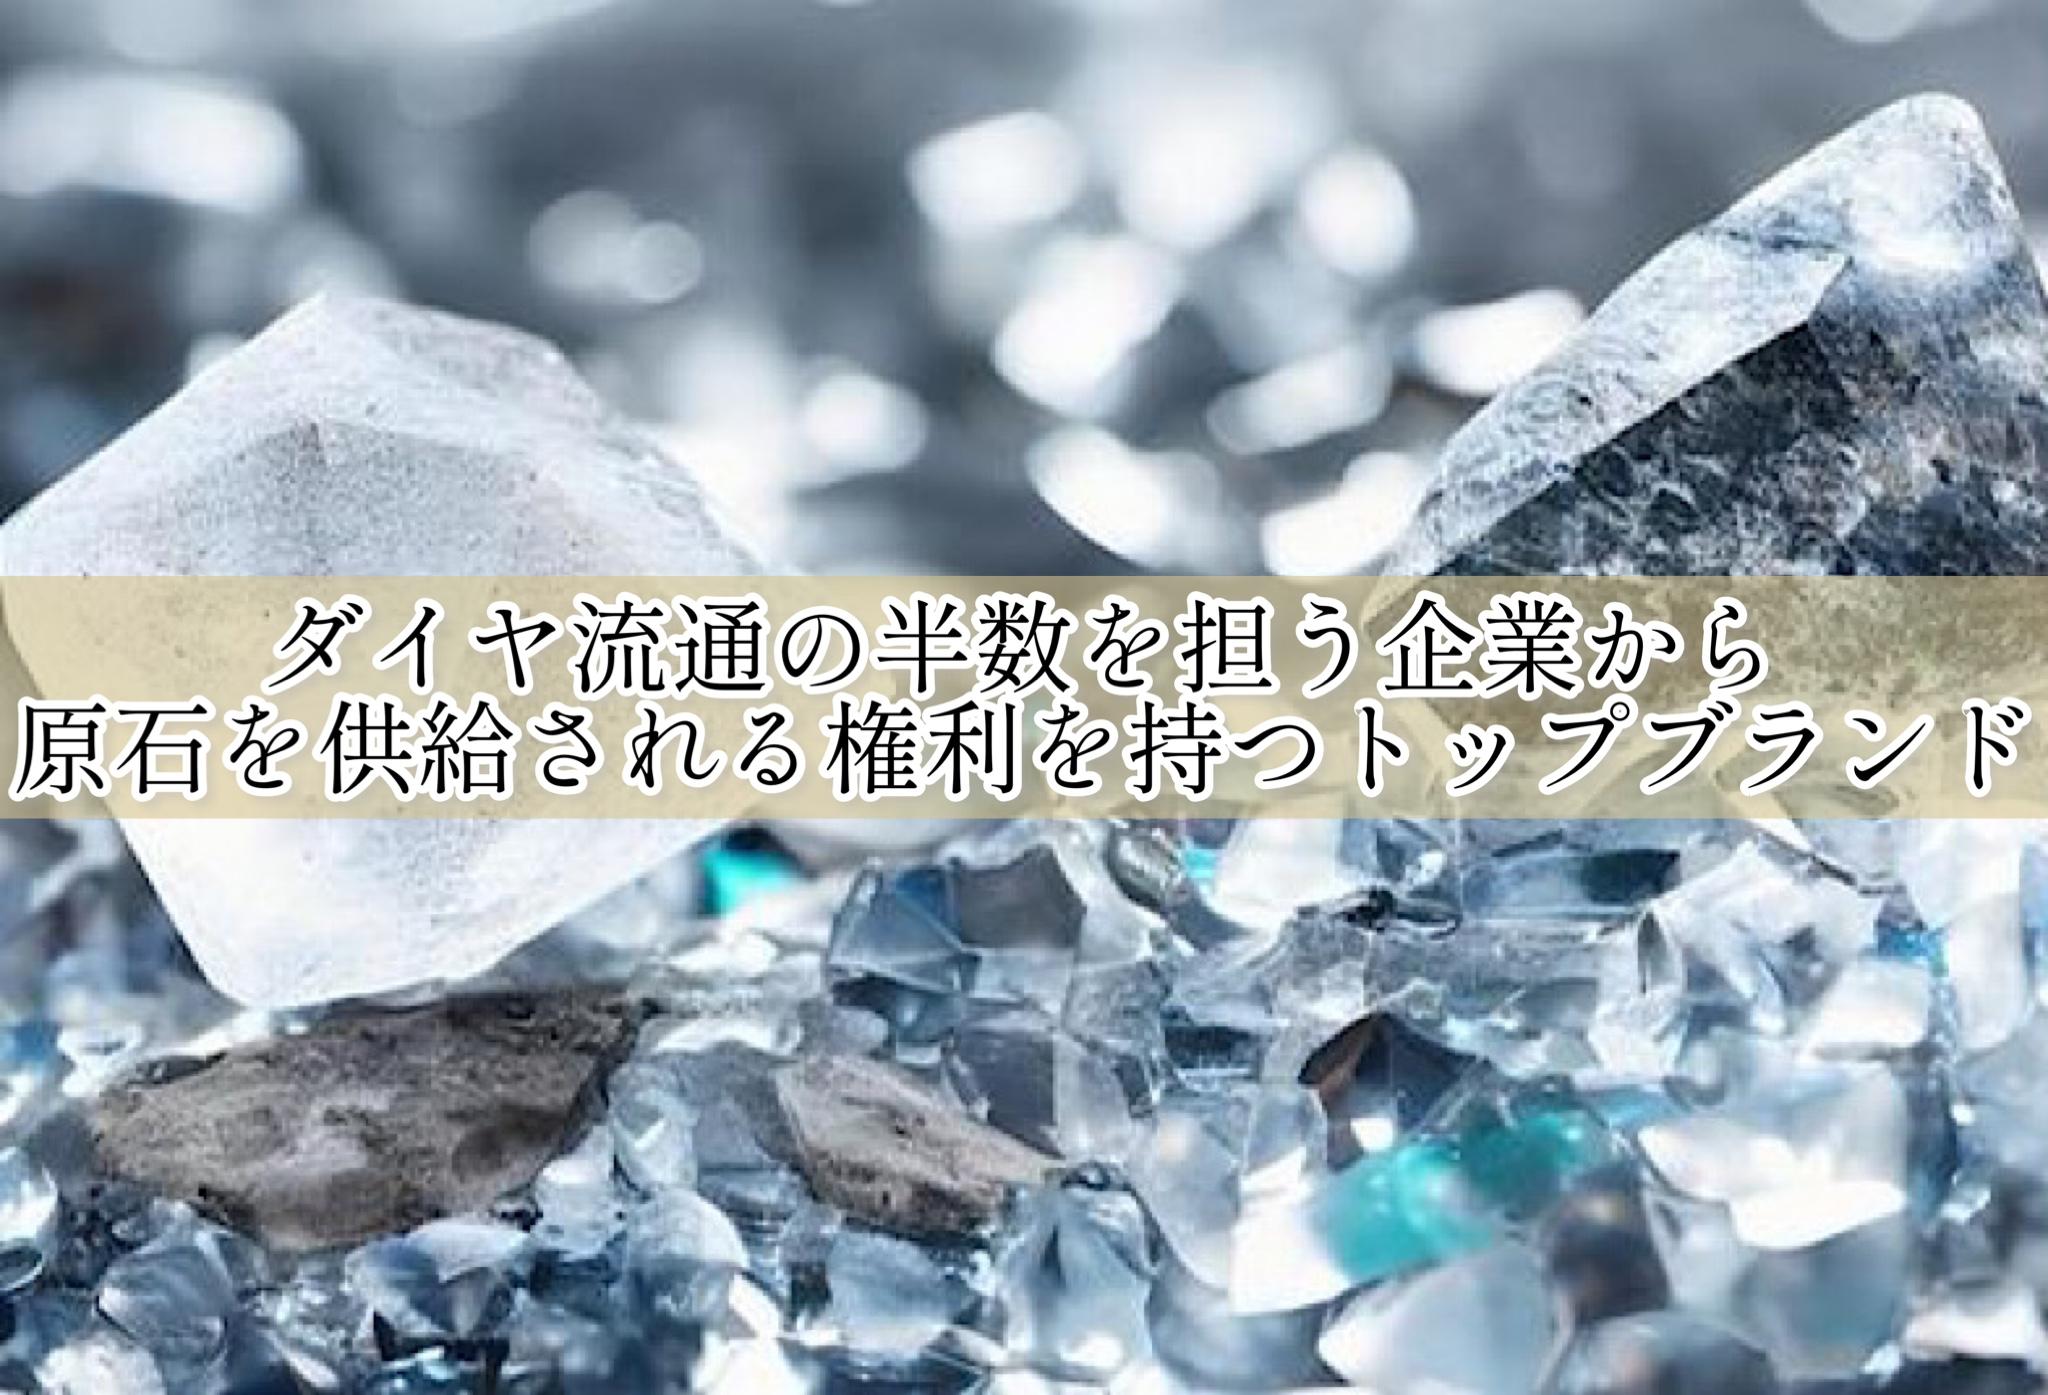 ラザールダイヤモンド　ダイヤ流通の半数を担う企業から原石を供給される権利を持つトップブランド